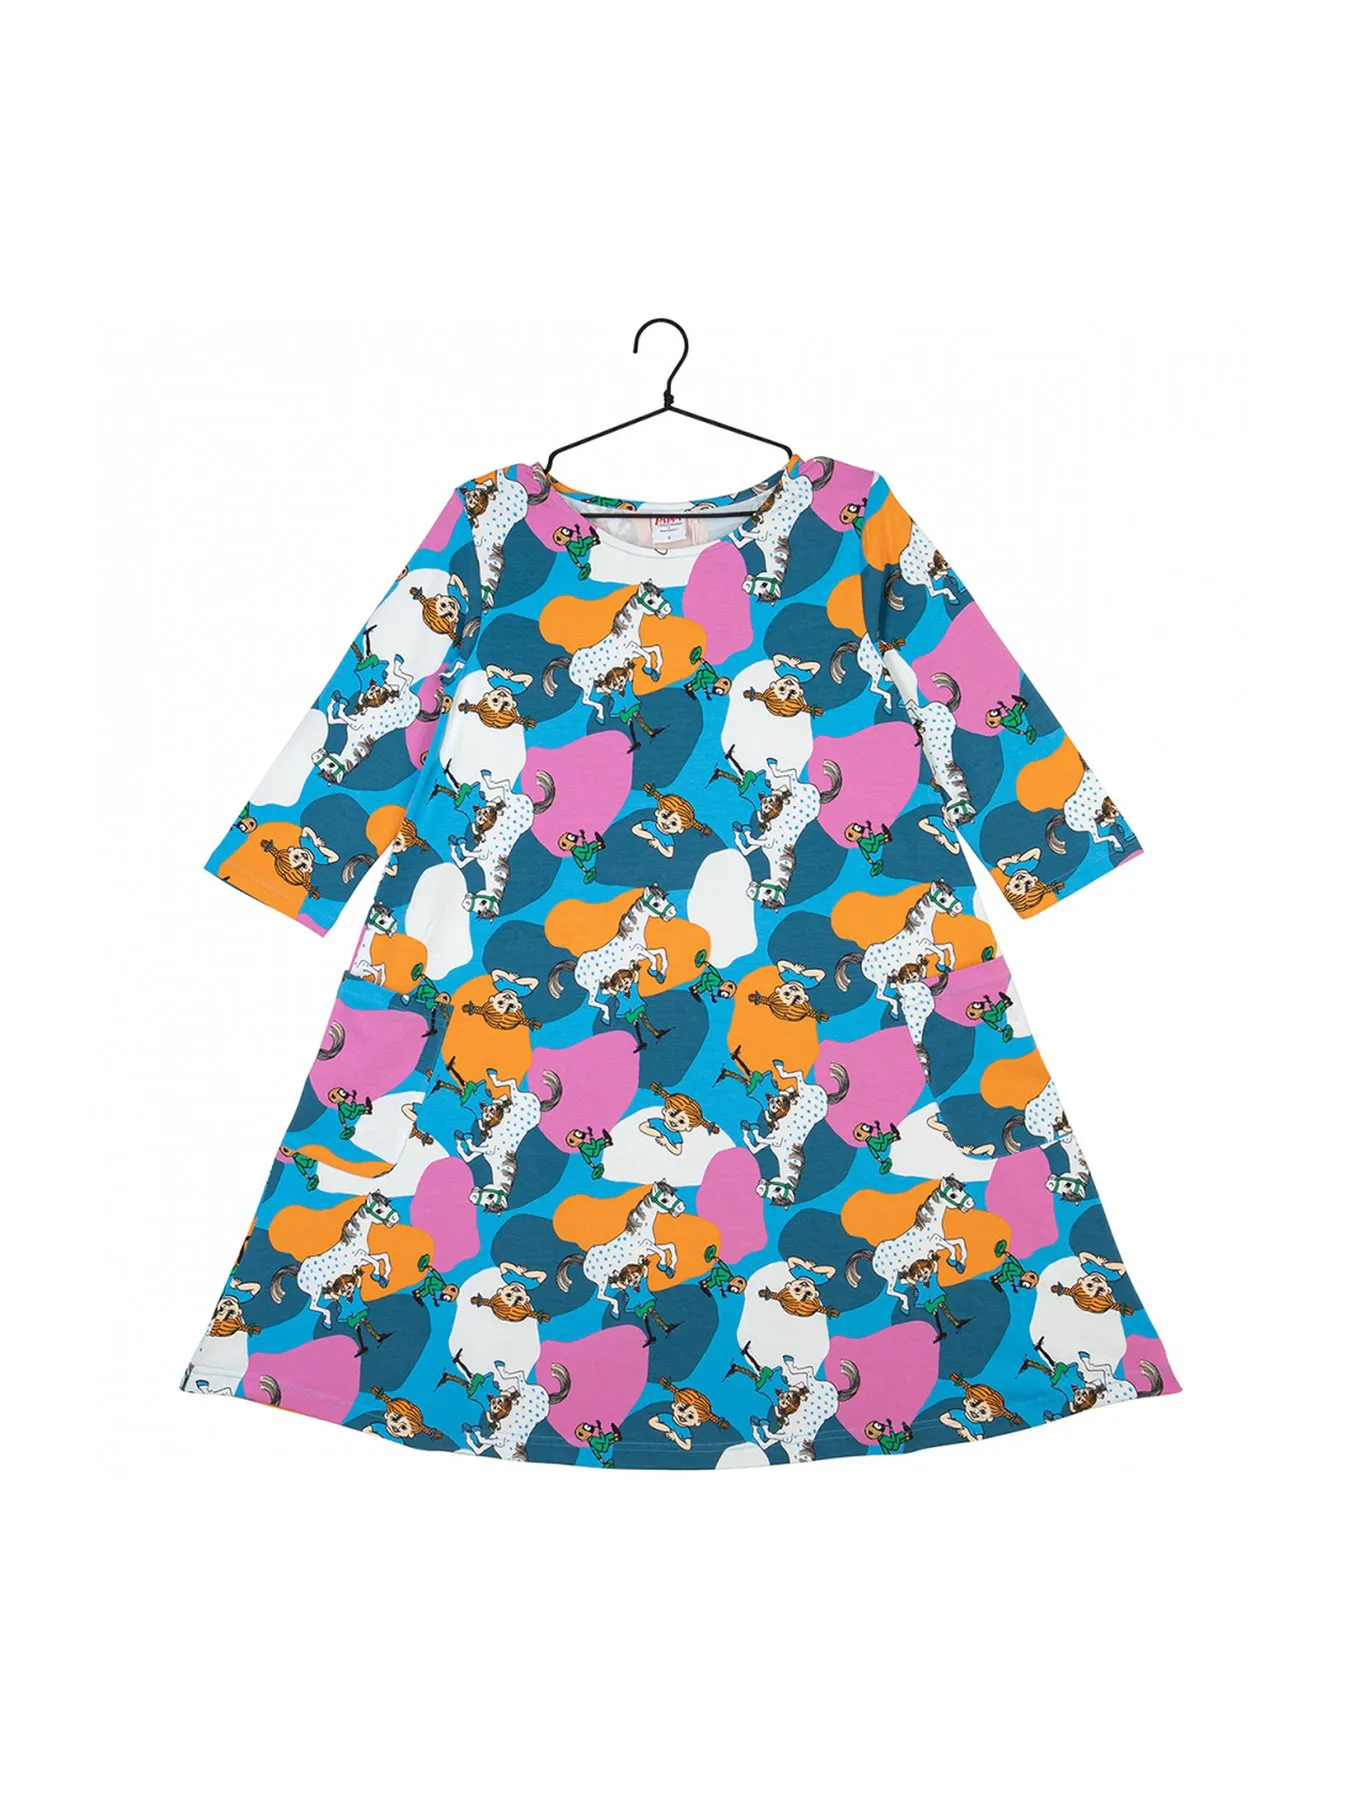 Kleid für Erwachsene Pippi Langstrumpf, blau